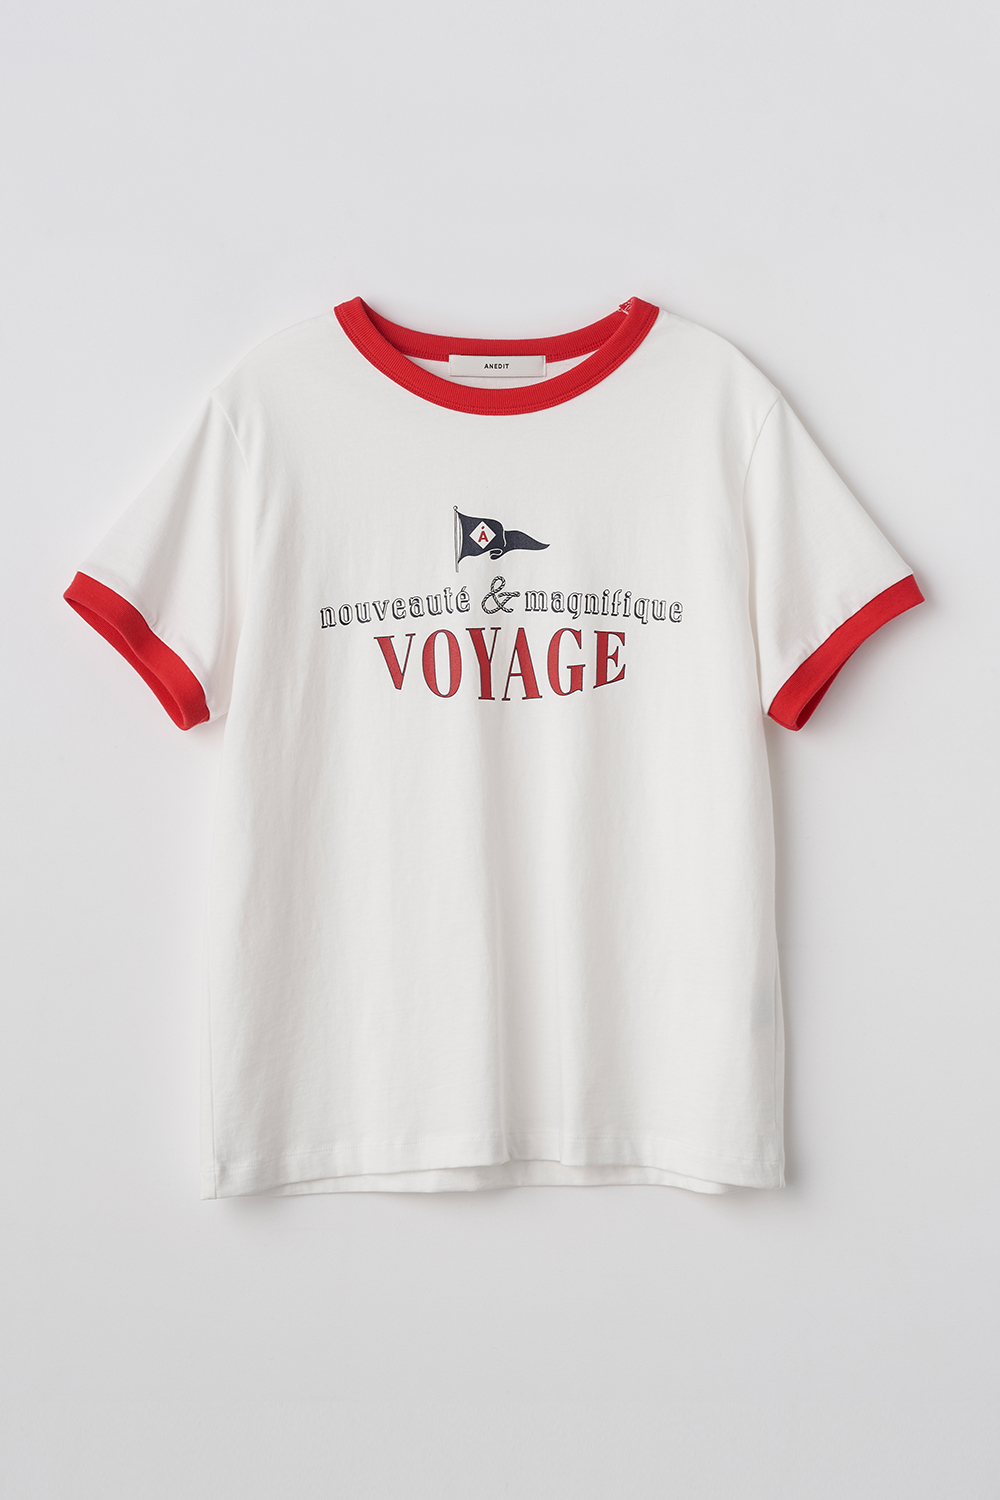 Voyage Tshirt_RE